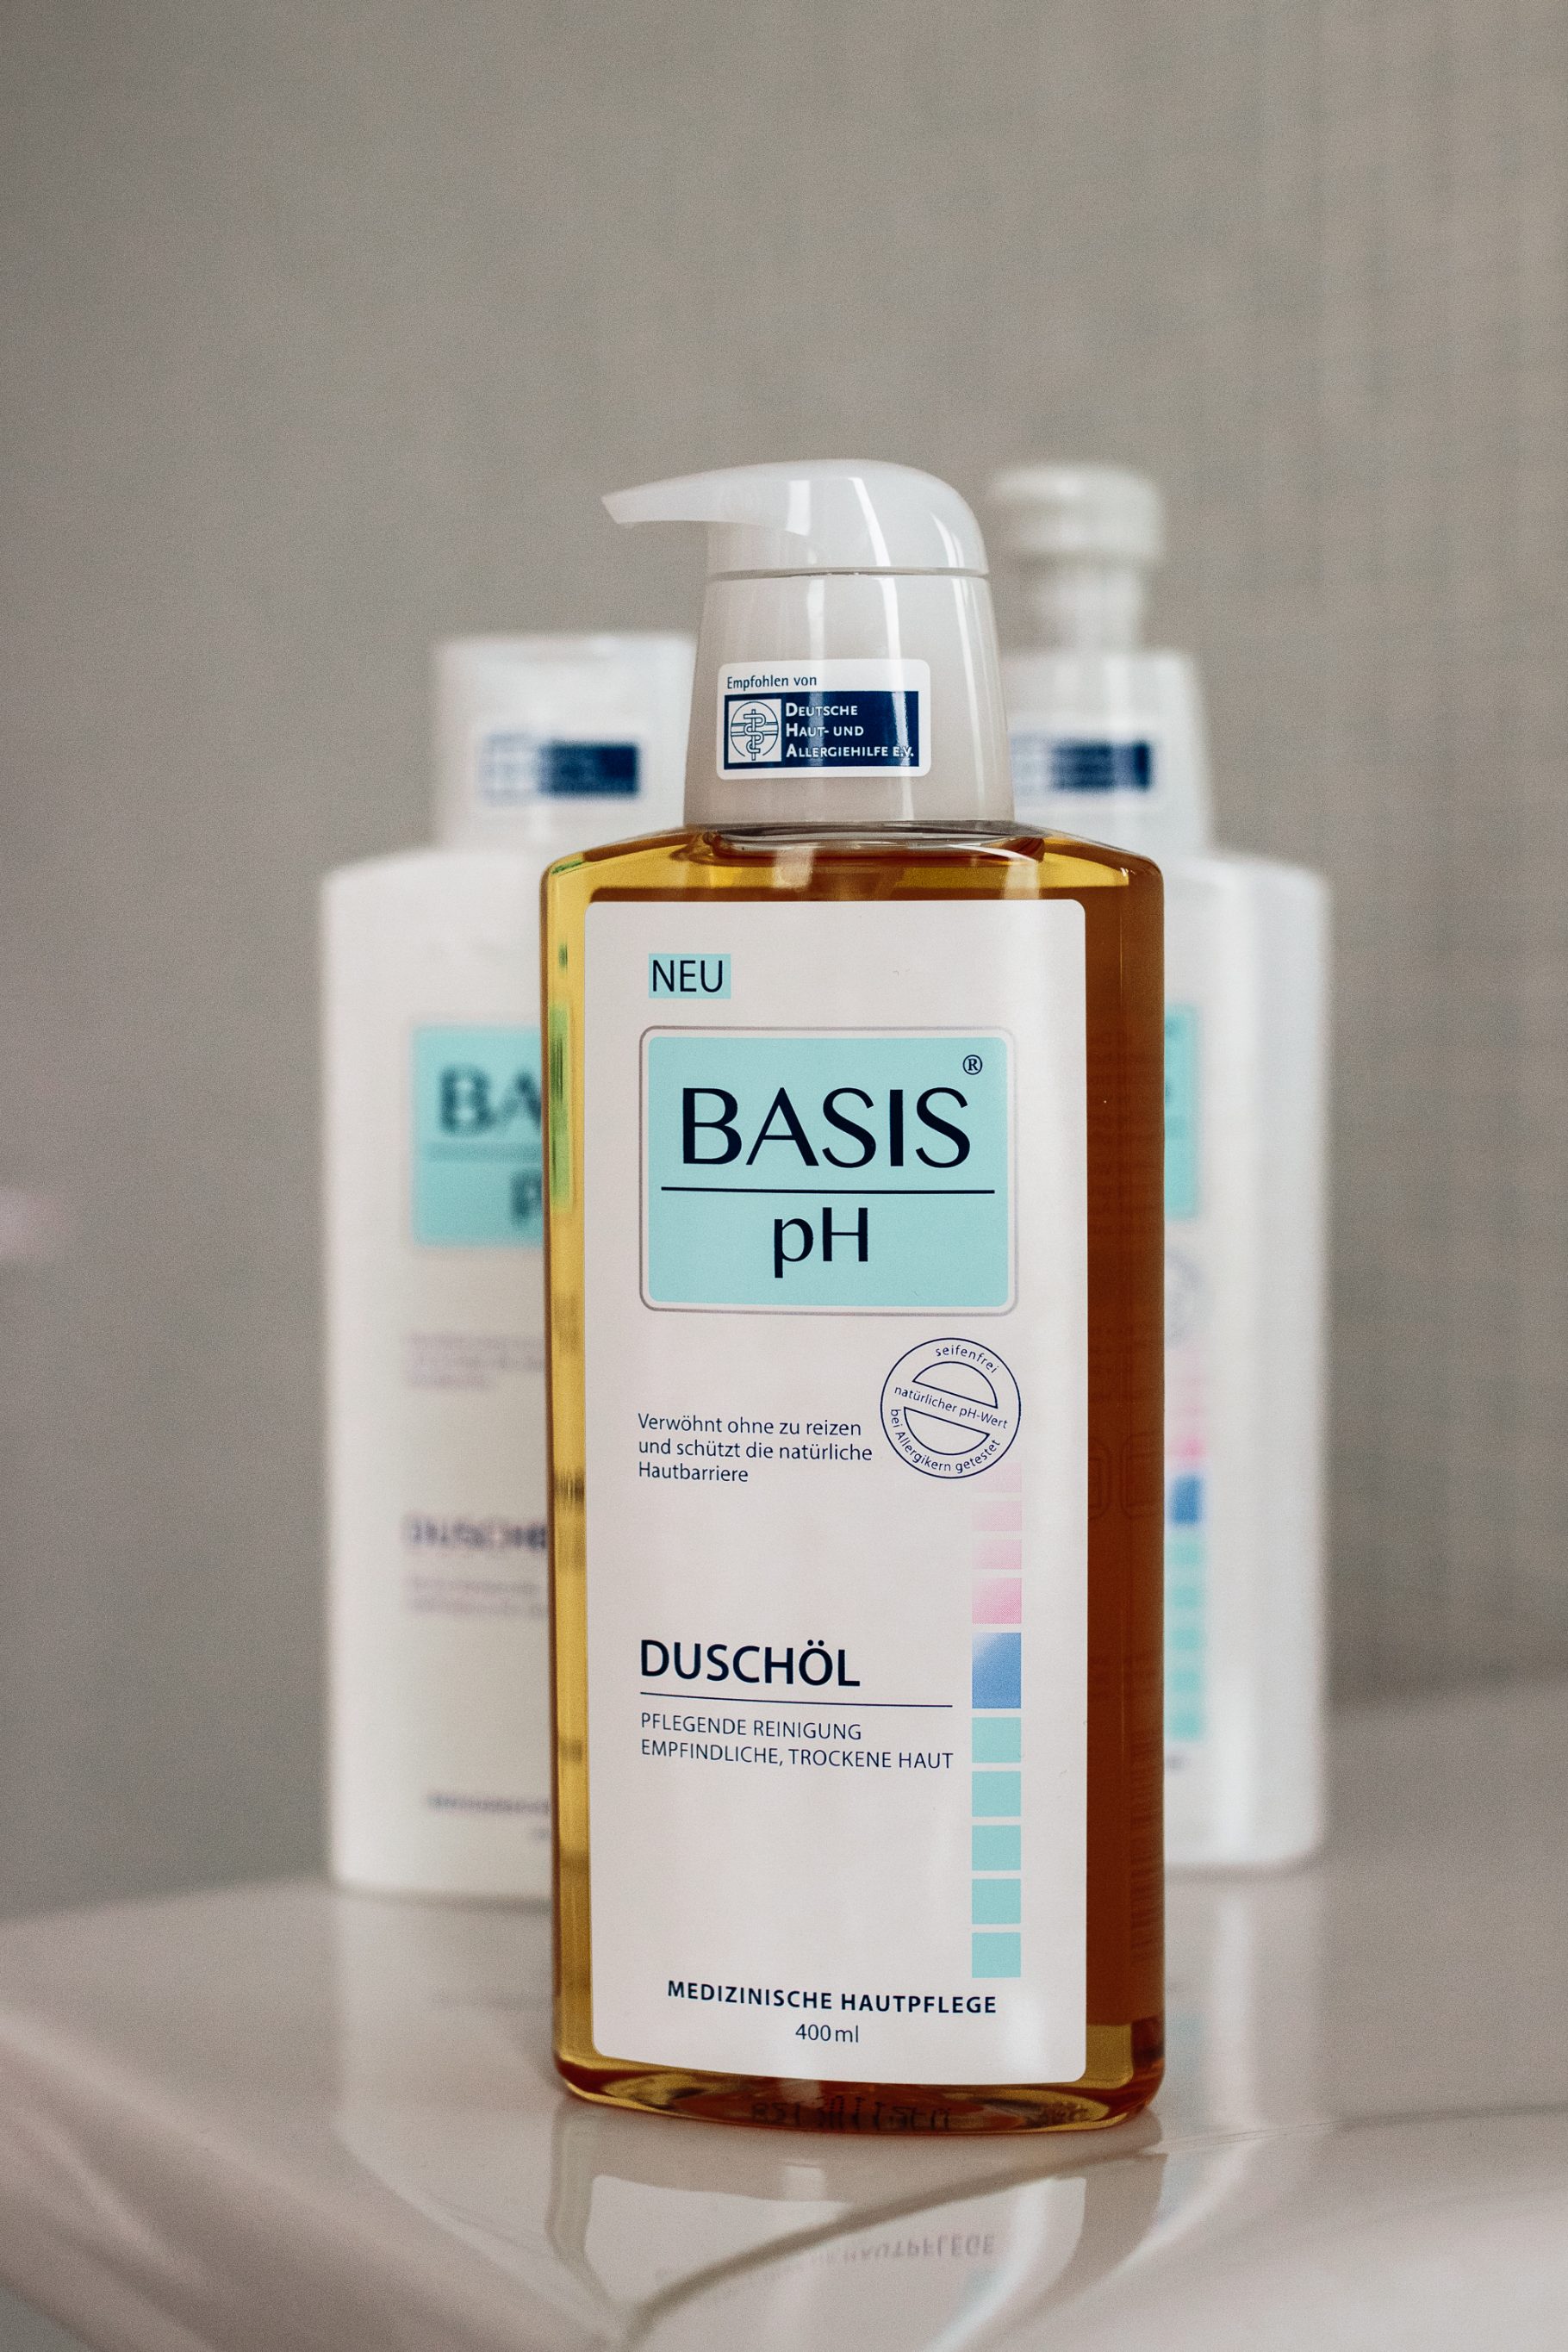 Back to Basic mit BASIS pH auf dem österreichischen Lifestyle Blog Bits and Bobs by Eva. Mehr Beauty Tipps auf www.bitsandbobsbyeva.com